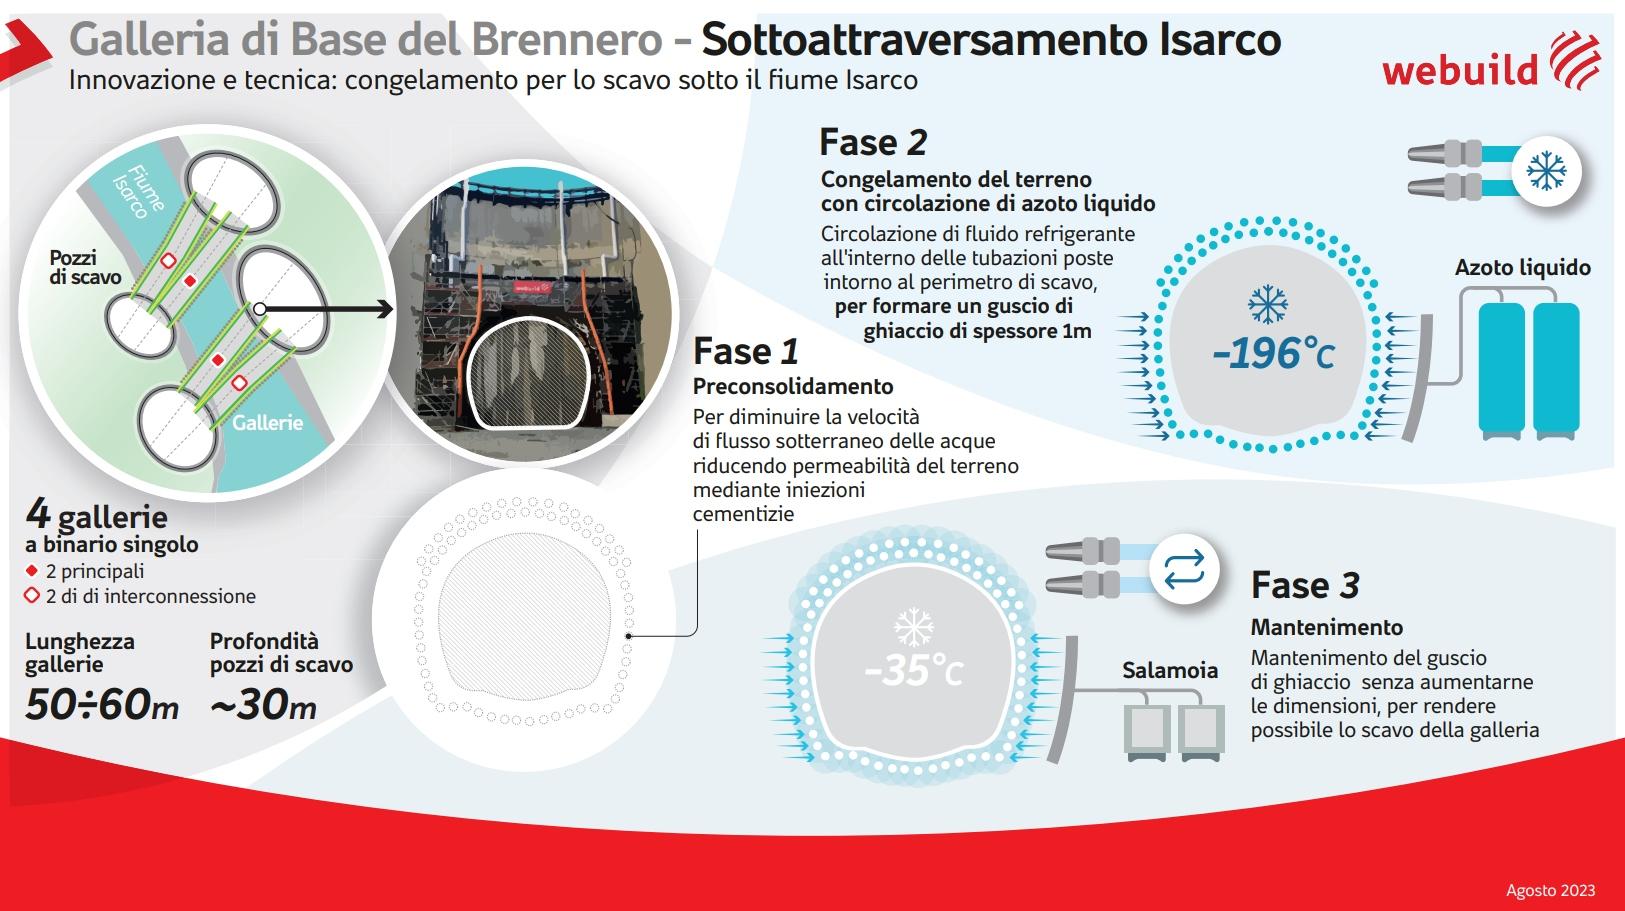 Galleria di Base del Brennero, Sottoattraversamento Isarco, infografica tecnica congelamento - Webuild